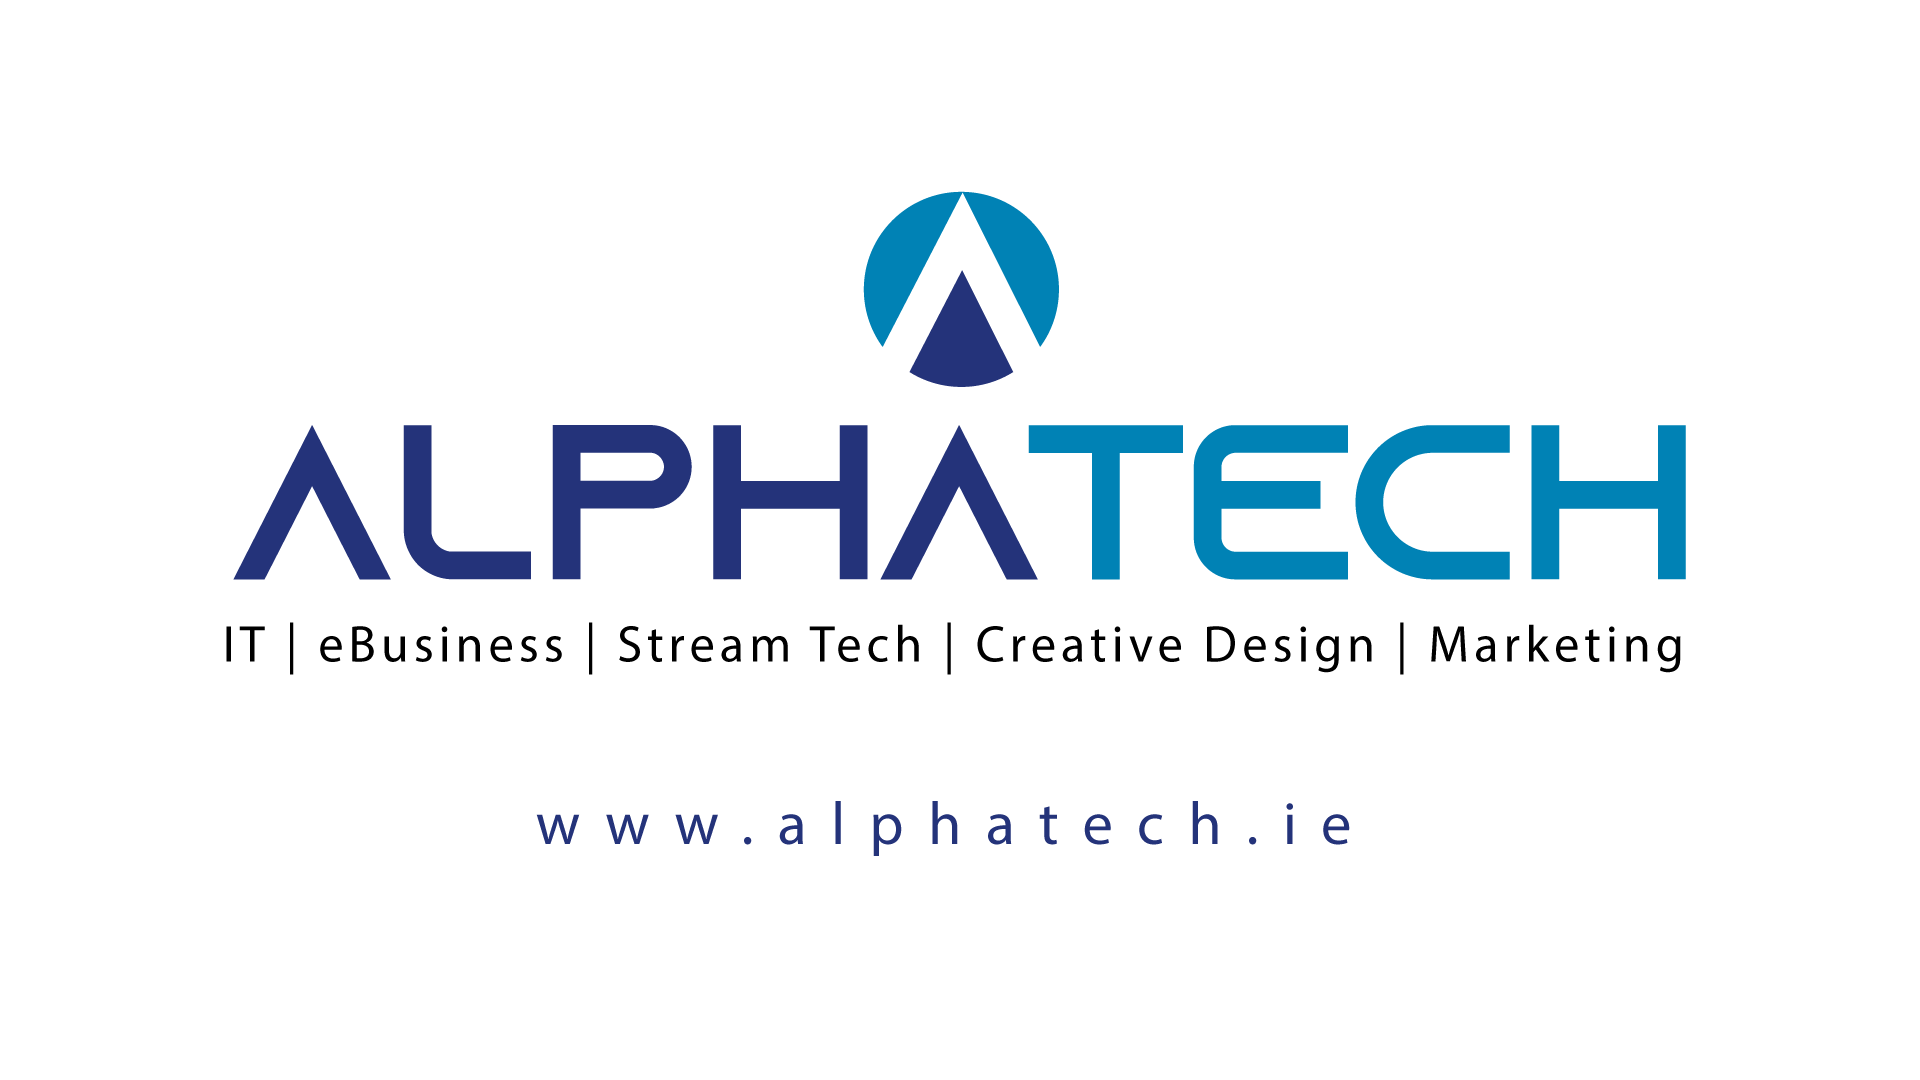 (c) Alphatech.ie